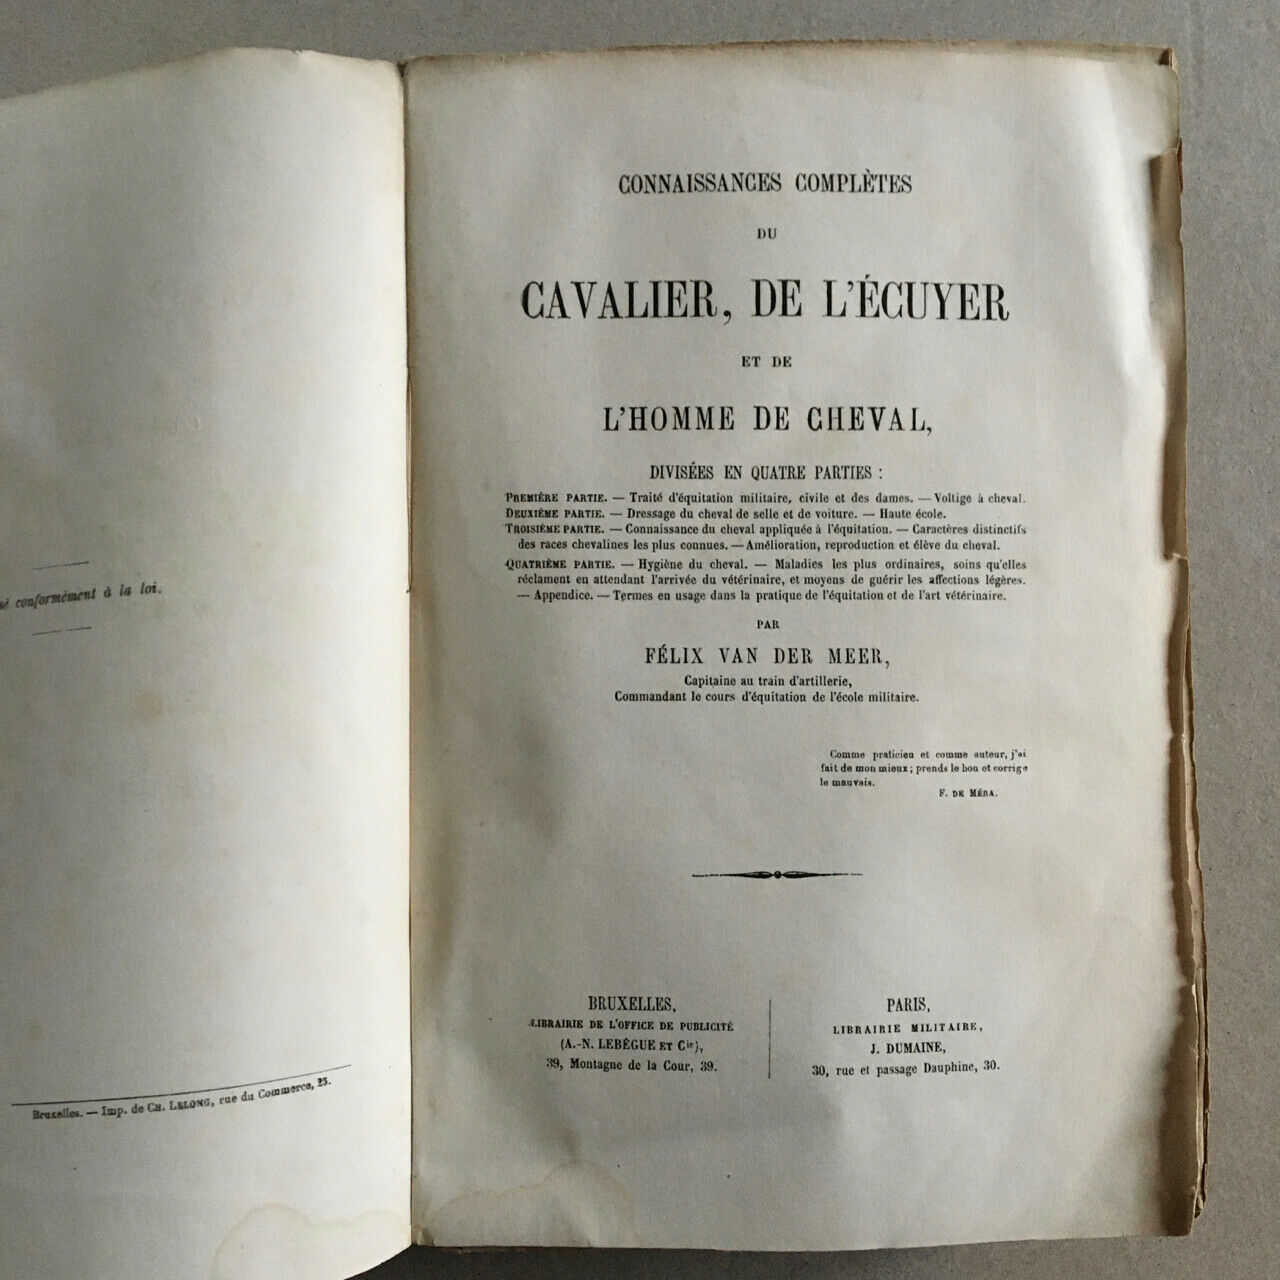 Félix van der Meer — Complete knowledge of the rider — 13 pl. — Lebegue 1865